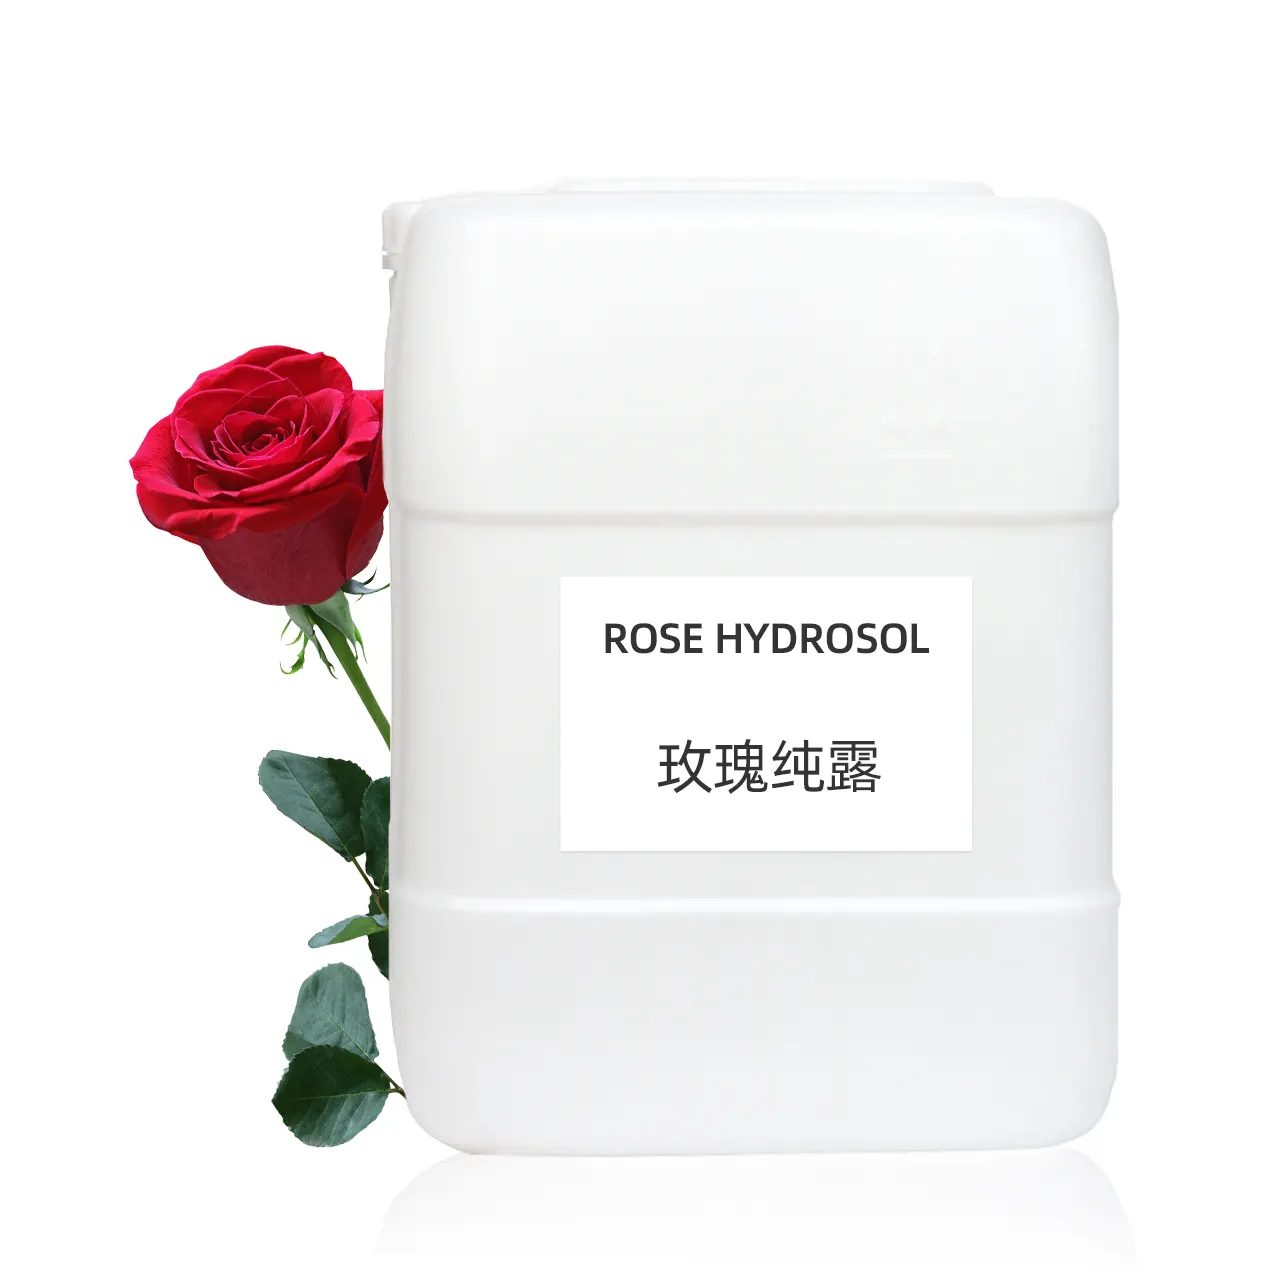 100% puro senza additivi private label rose hydrosol organic bulk hydrolat neroli jasmine lavanda acqua di rose per la cura della pelle